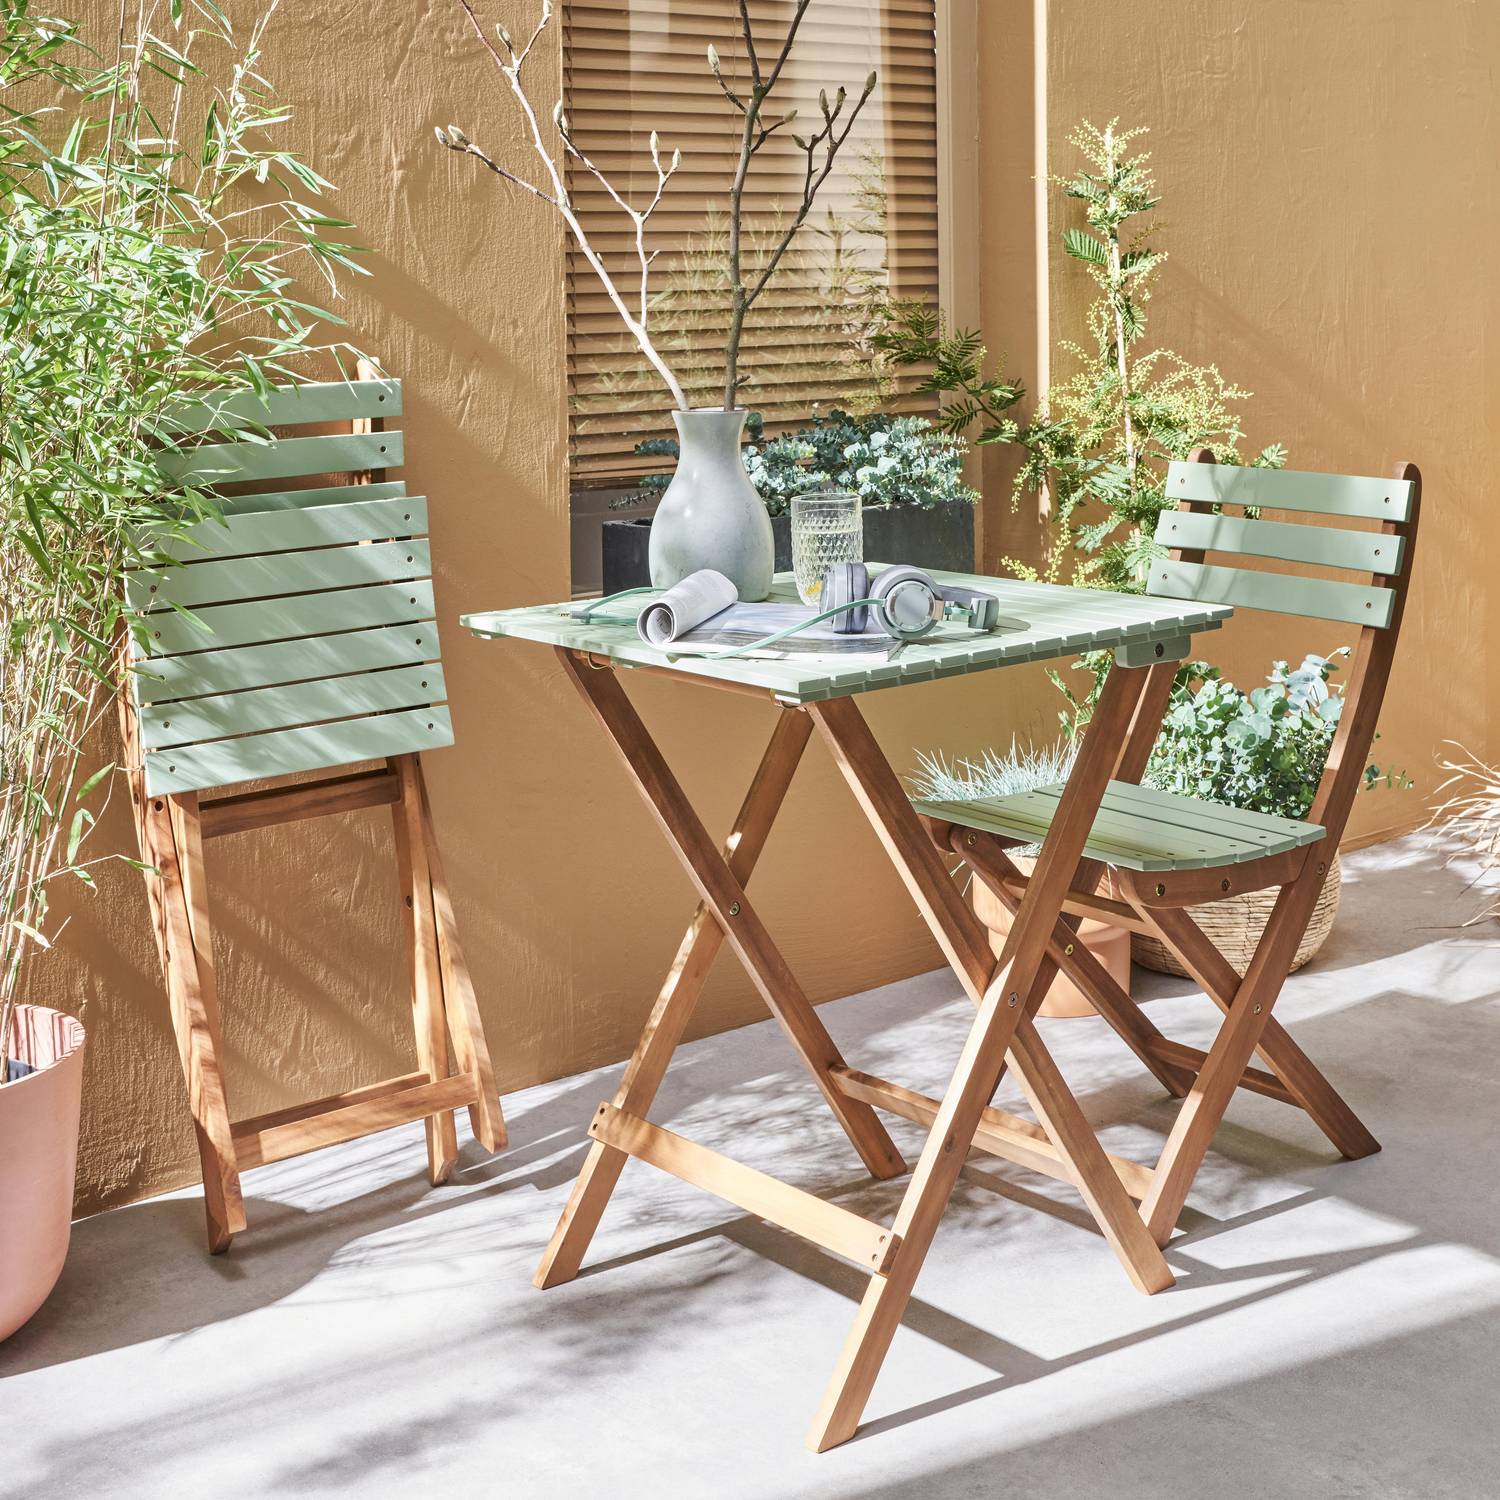 Bistro-Gartentisch aus Holz 60x60cm - Barcelona Holz / graugrün - zweifarbig quadratisch Klappbar aus Akazie mit 2 Klappstühlen Photo2